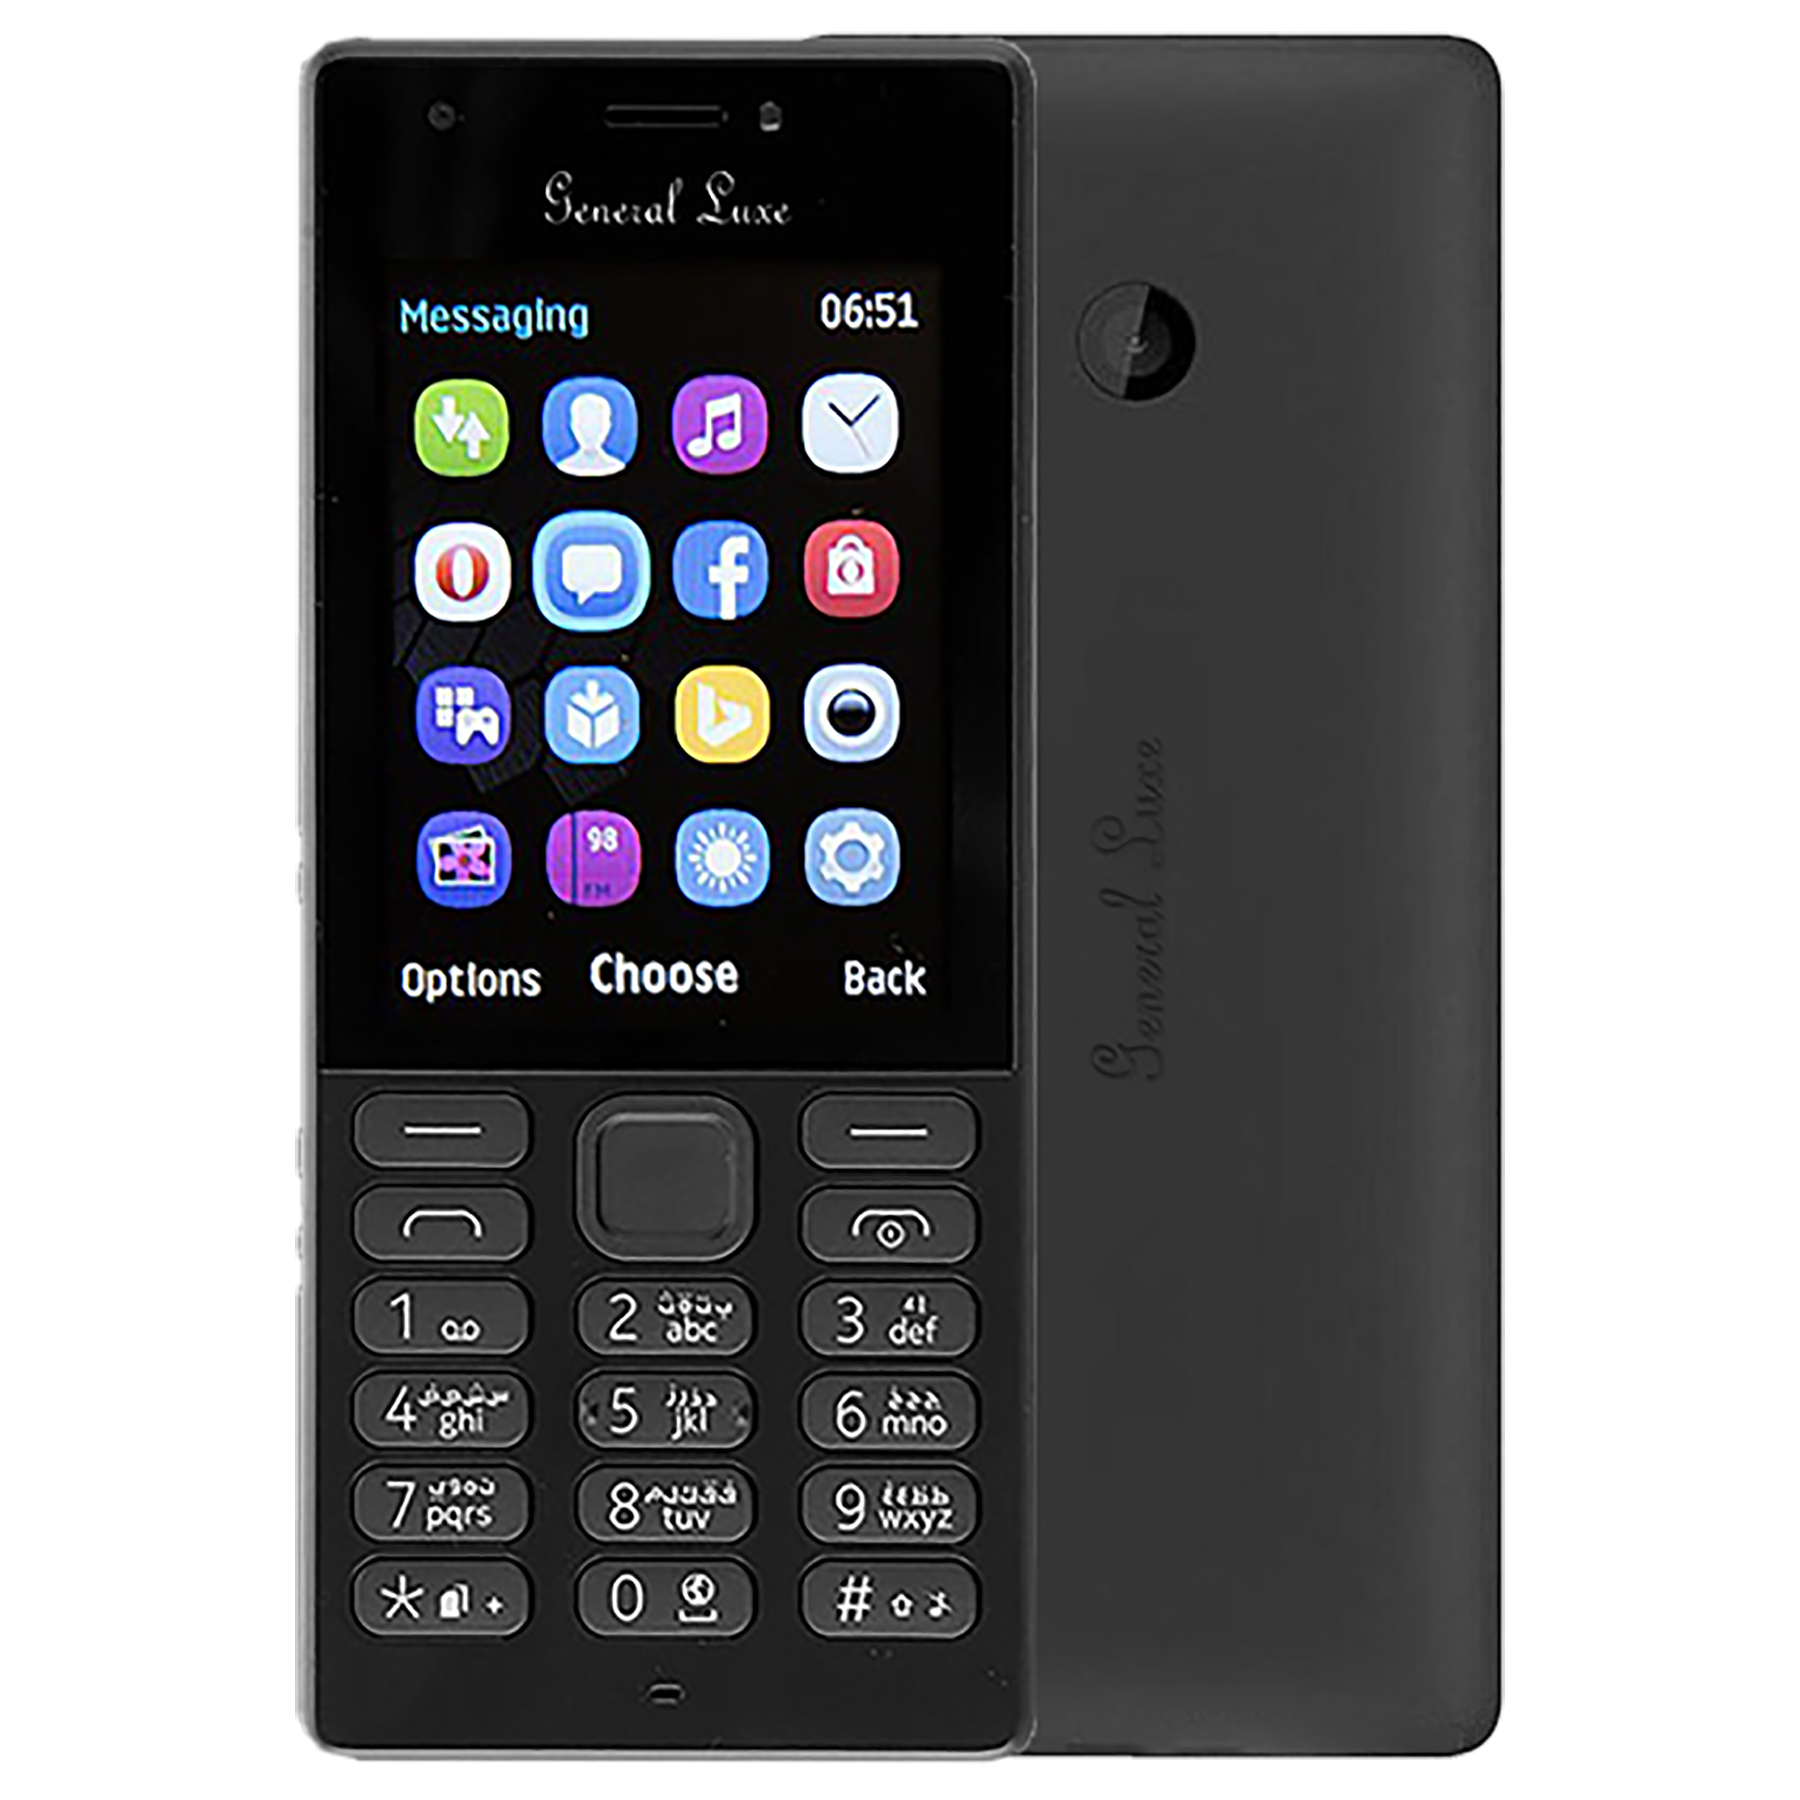 ارزان ترین قیمت گوشی موبایل جنرال لوکس مدل 216 دو سیم کارت ظرفیت 16 مگابایتو رم 16 مگابایت